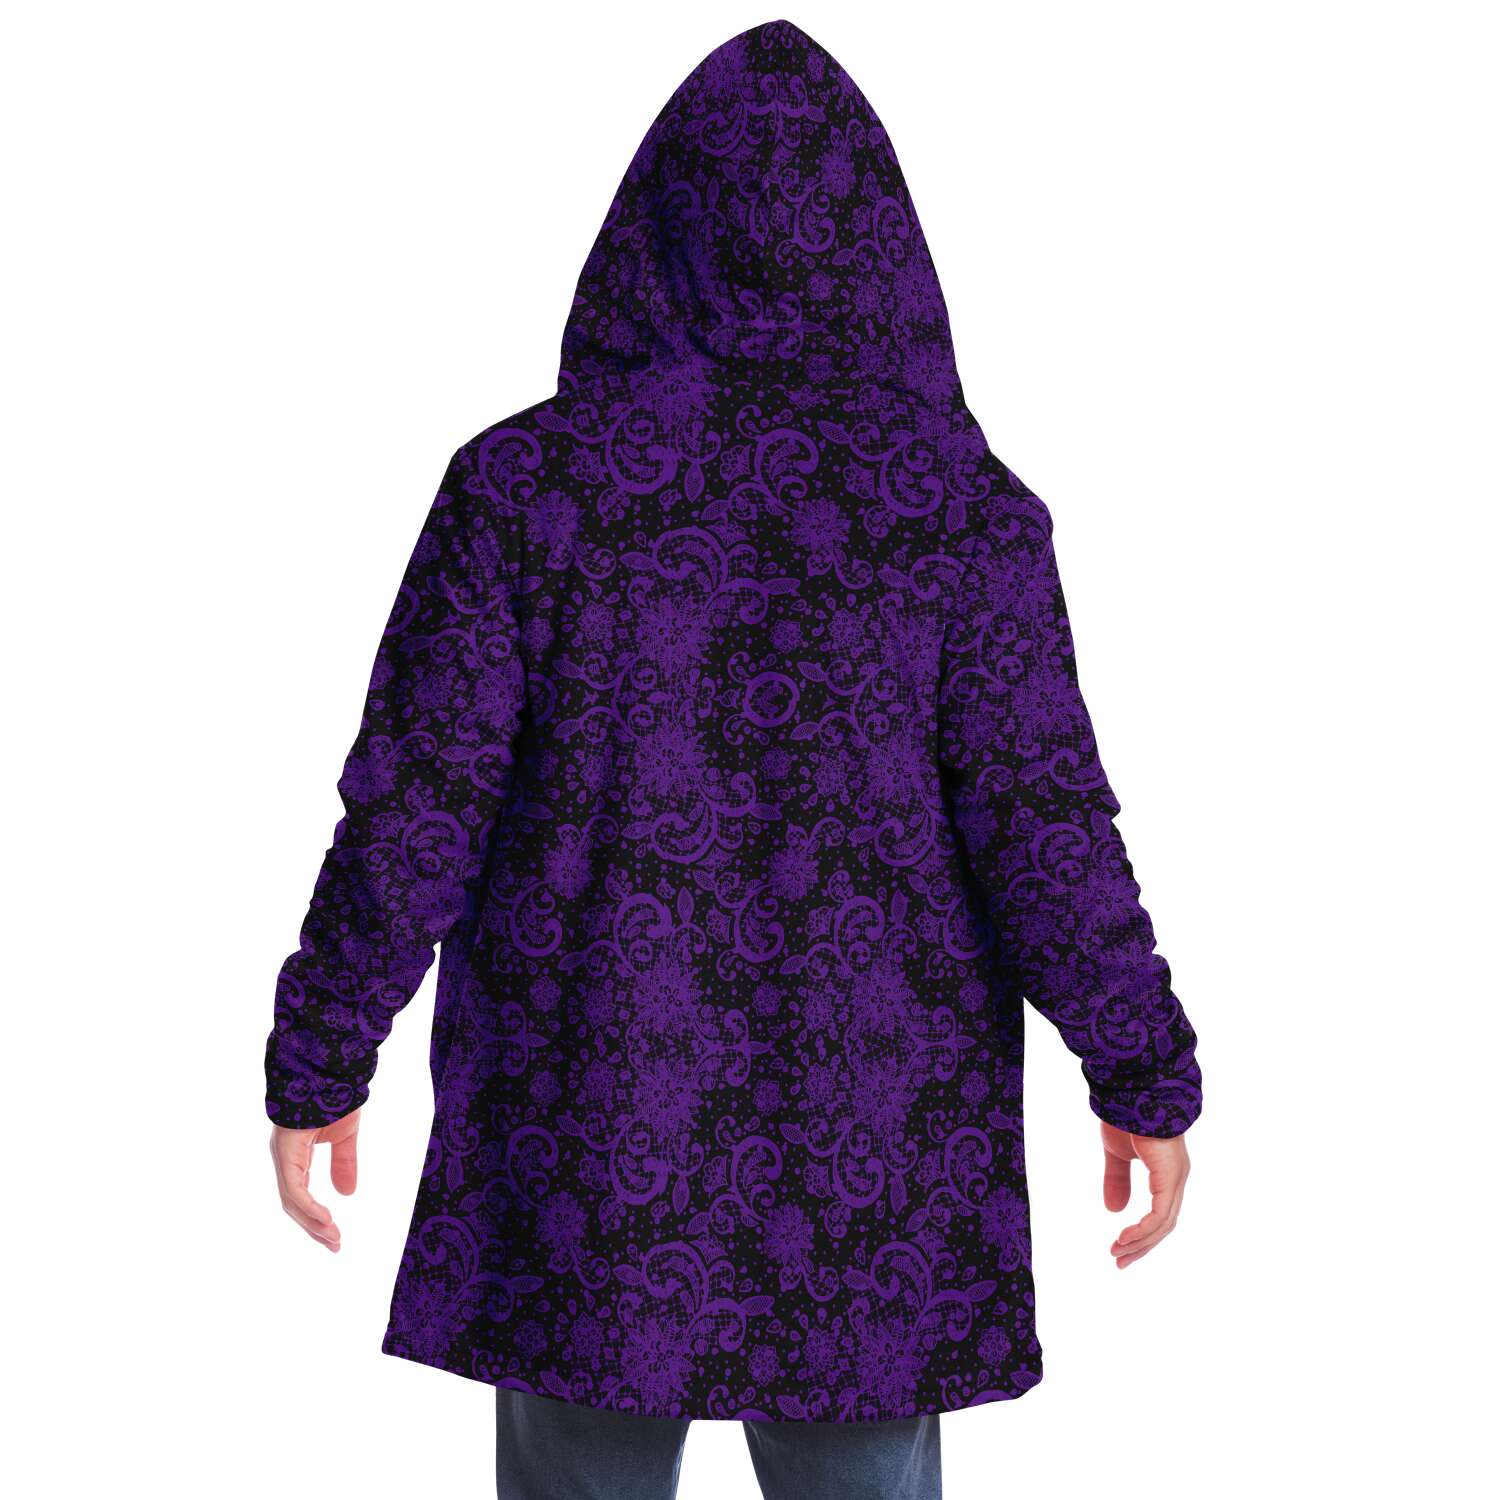 Purple Lace Cloak - Custom